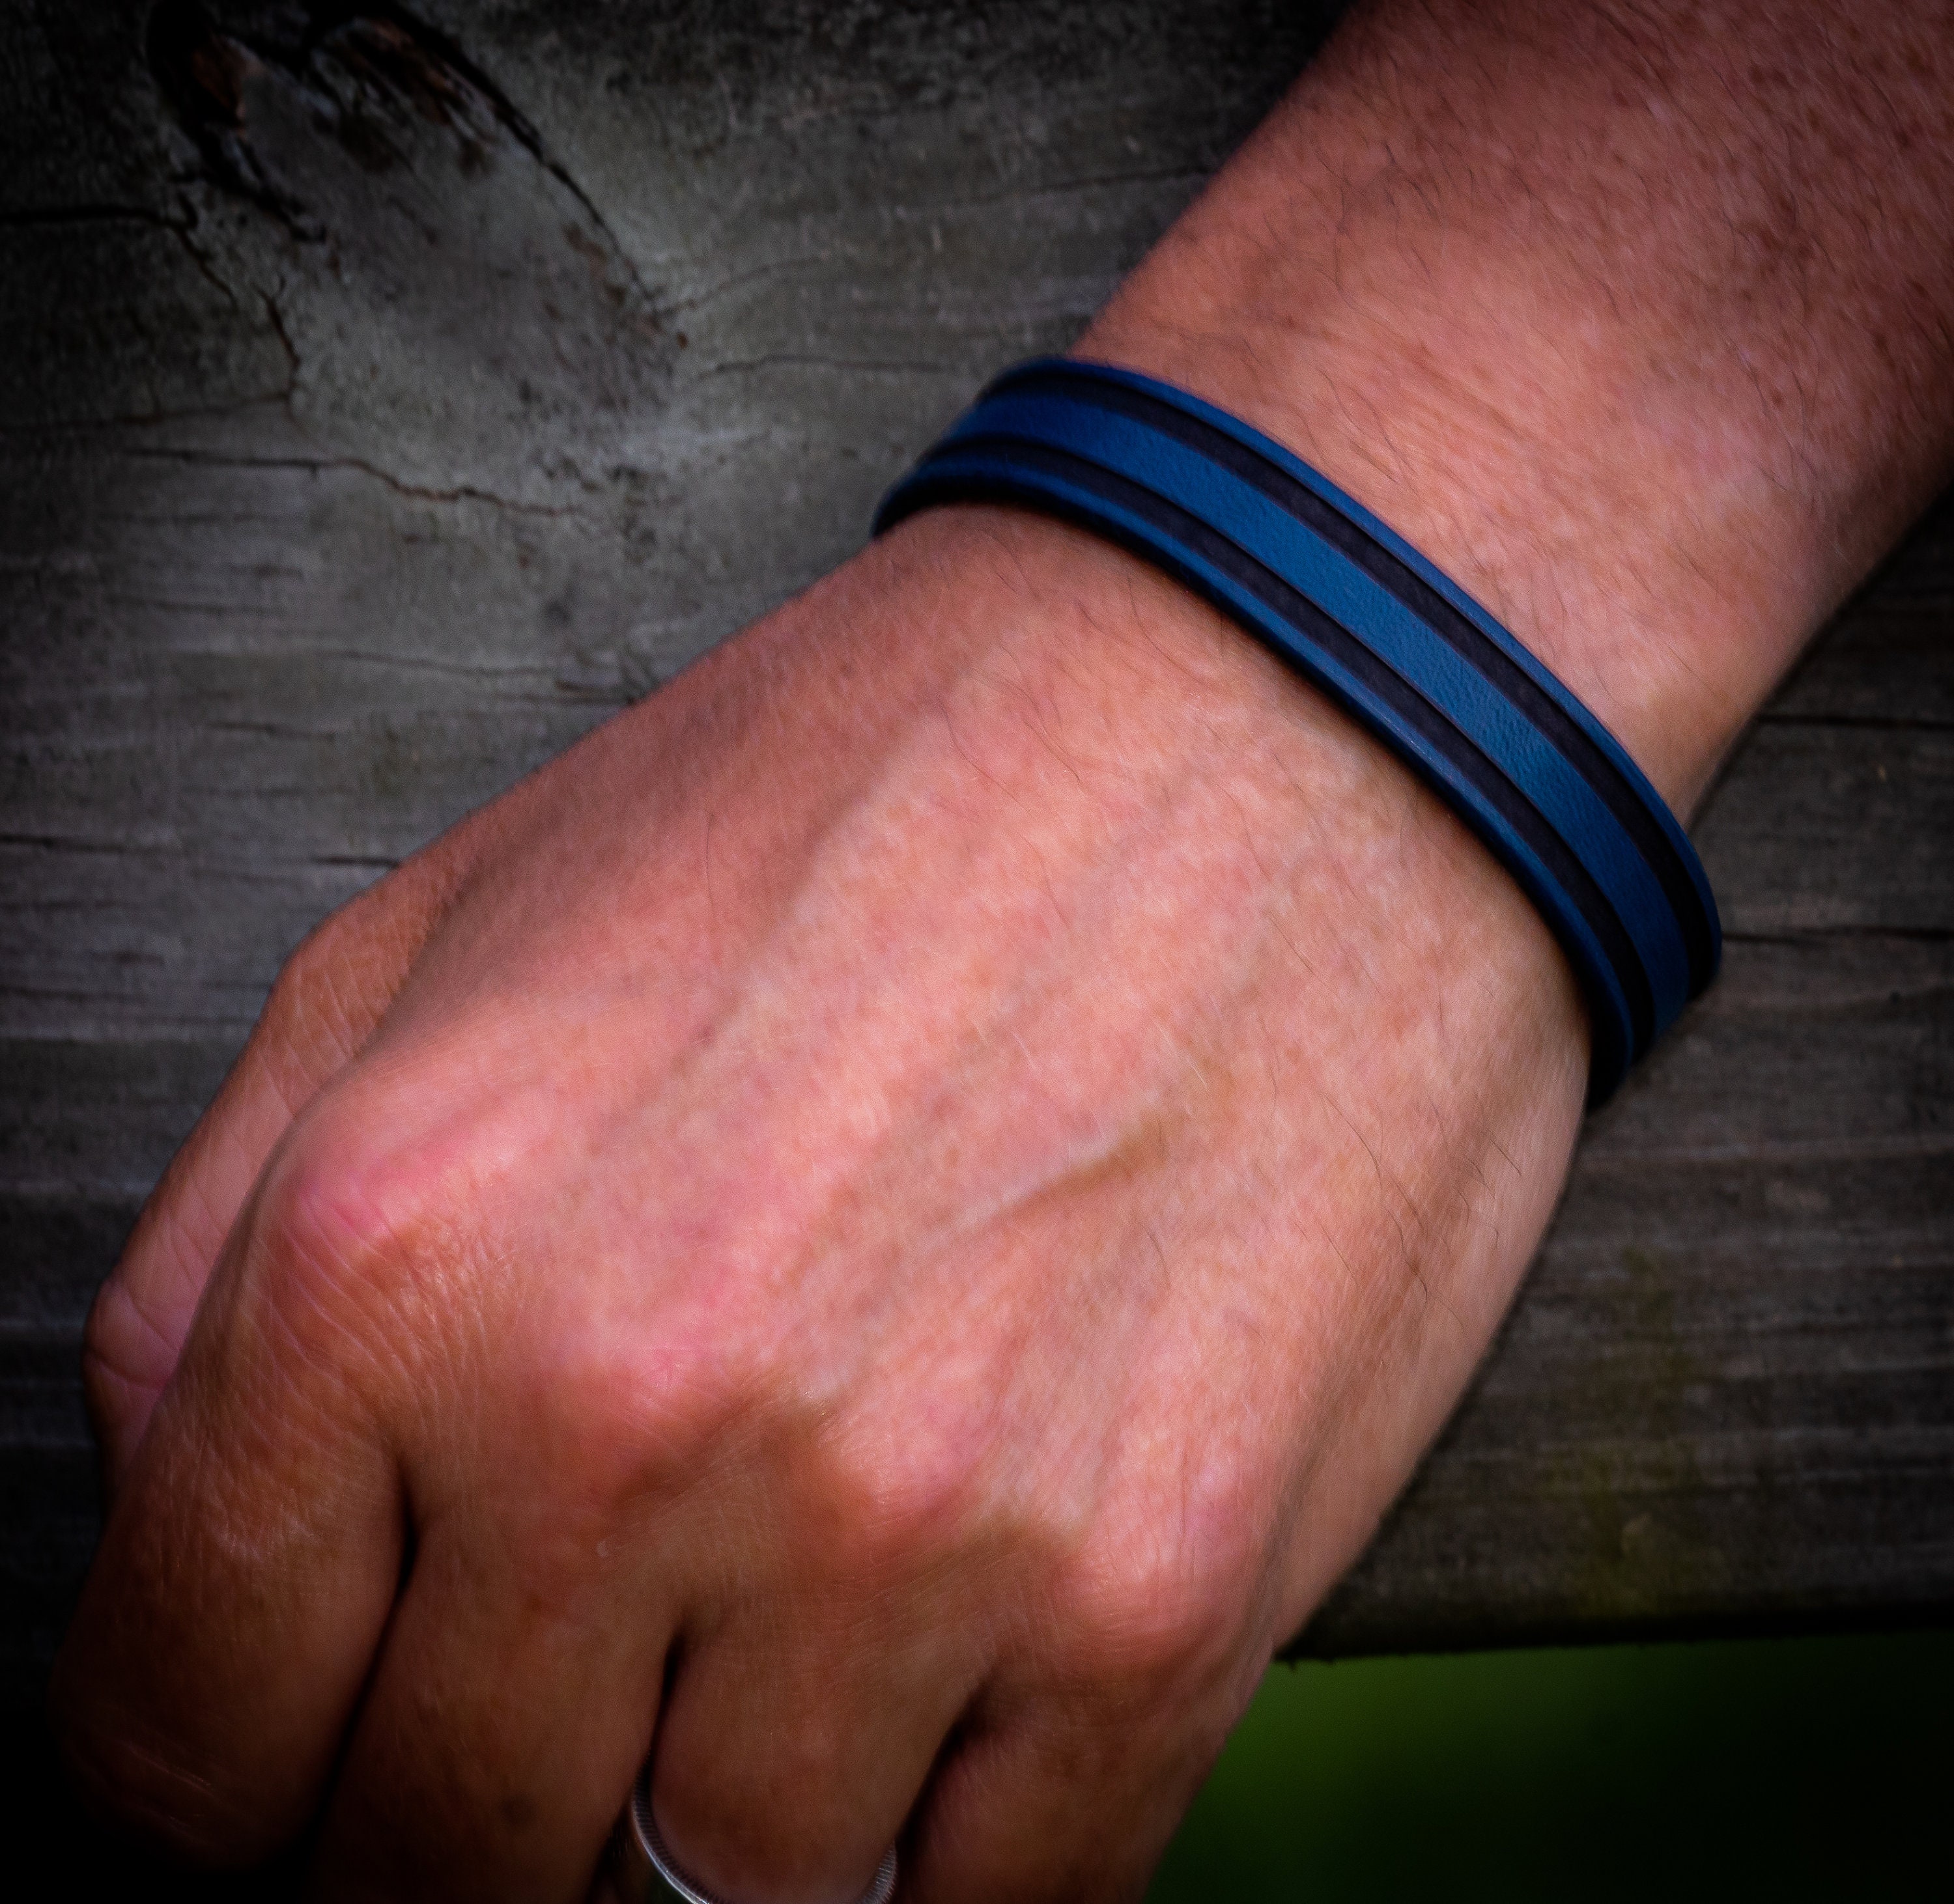 Thin Blue Line Leather Bracelet, Police Bracelet